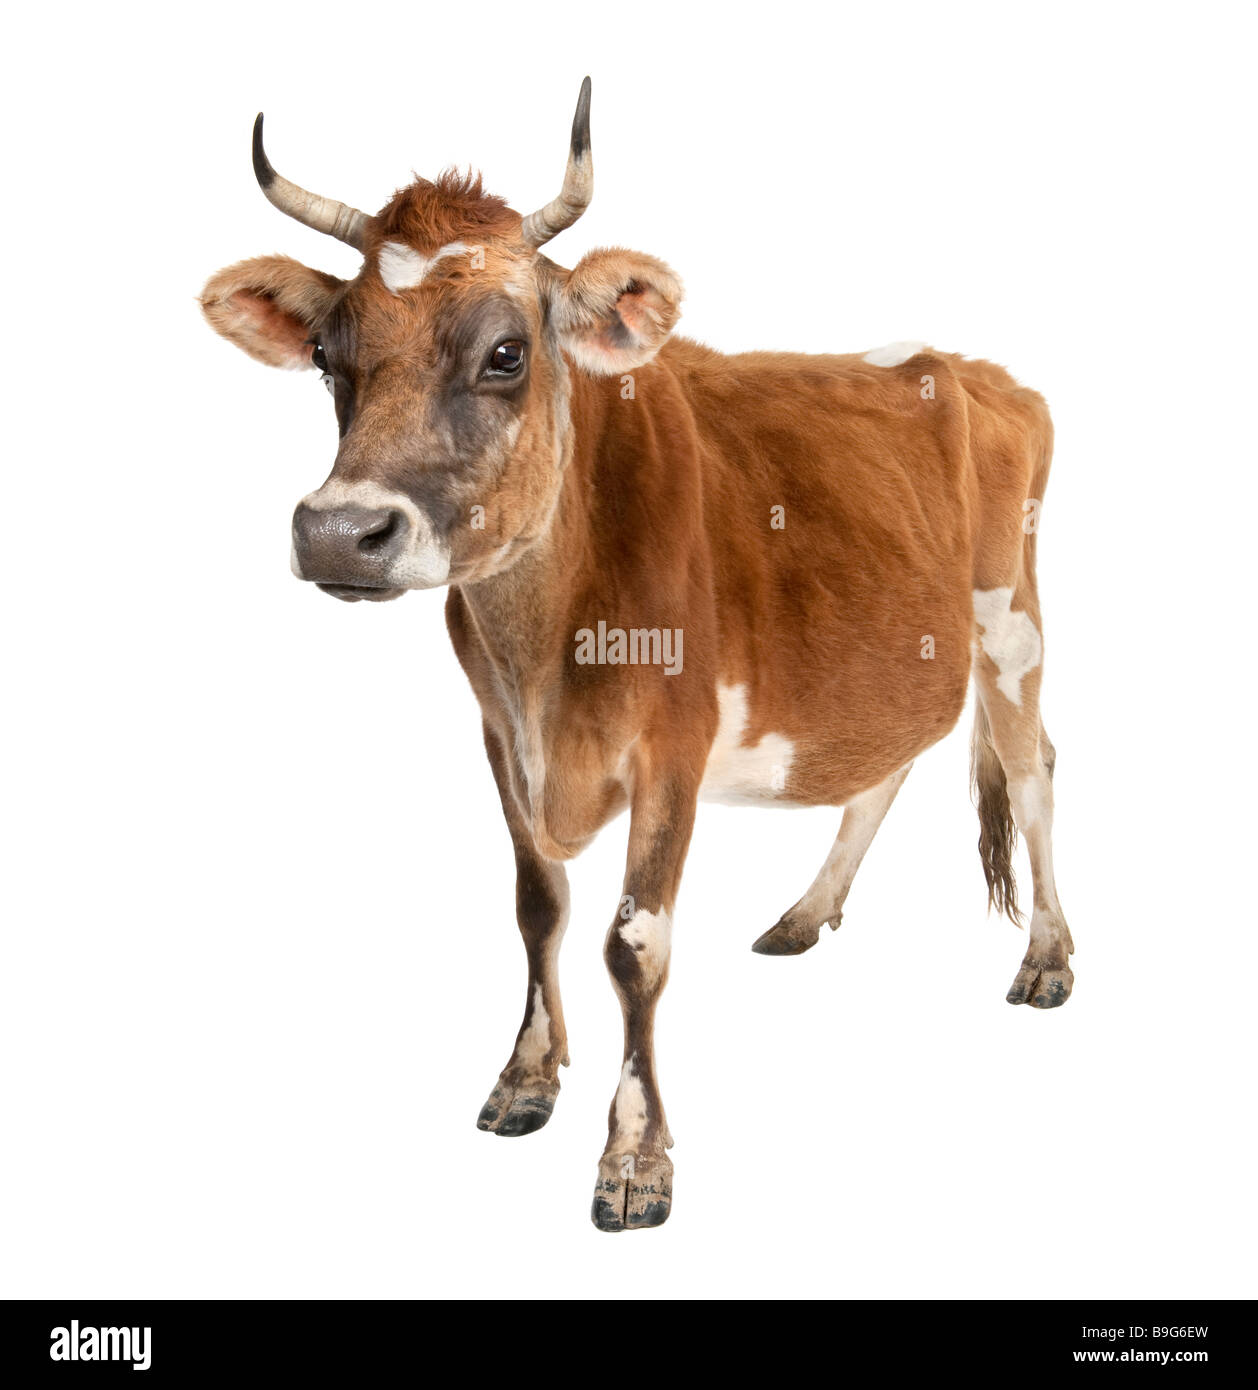 Vache jersiaise Banque d'images détourées - Alamy